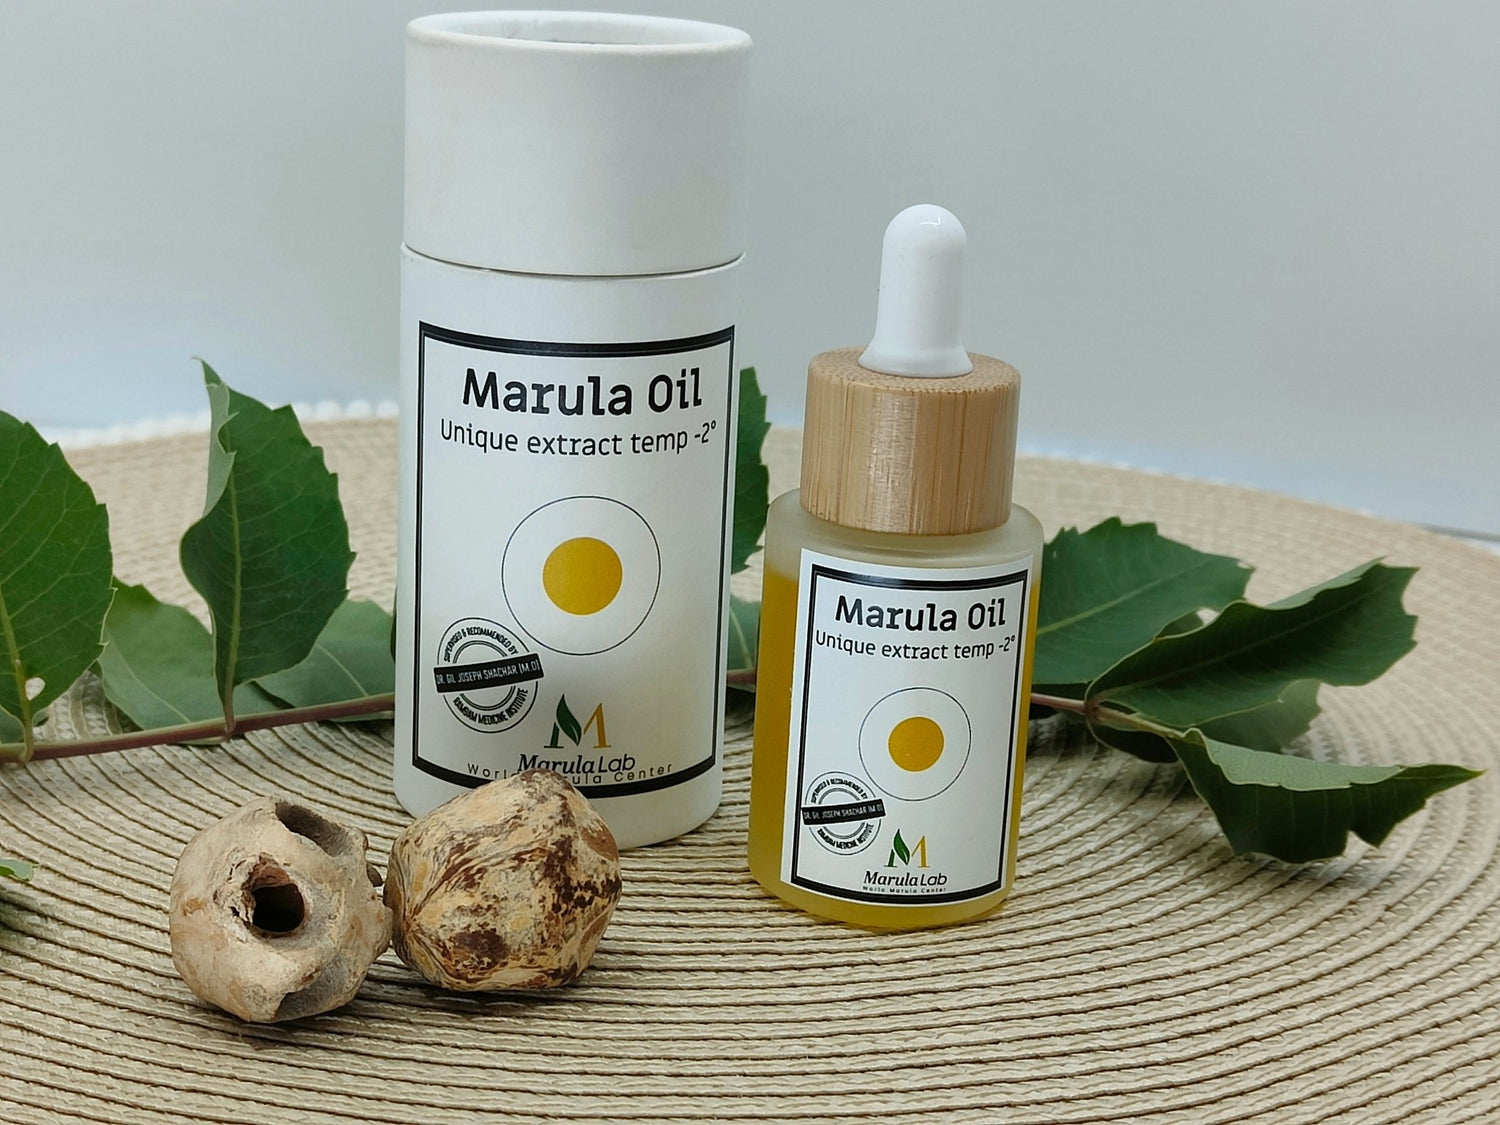 Marula oil cosmetics benefits - MarulaLab